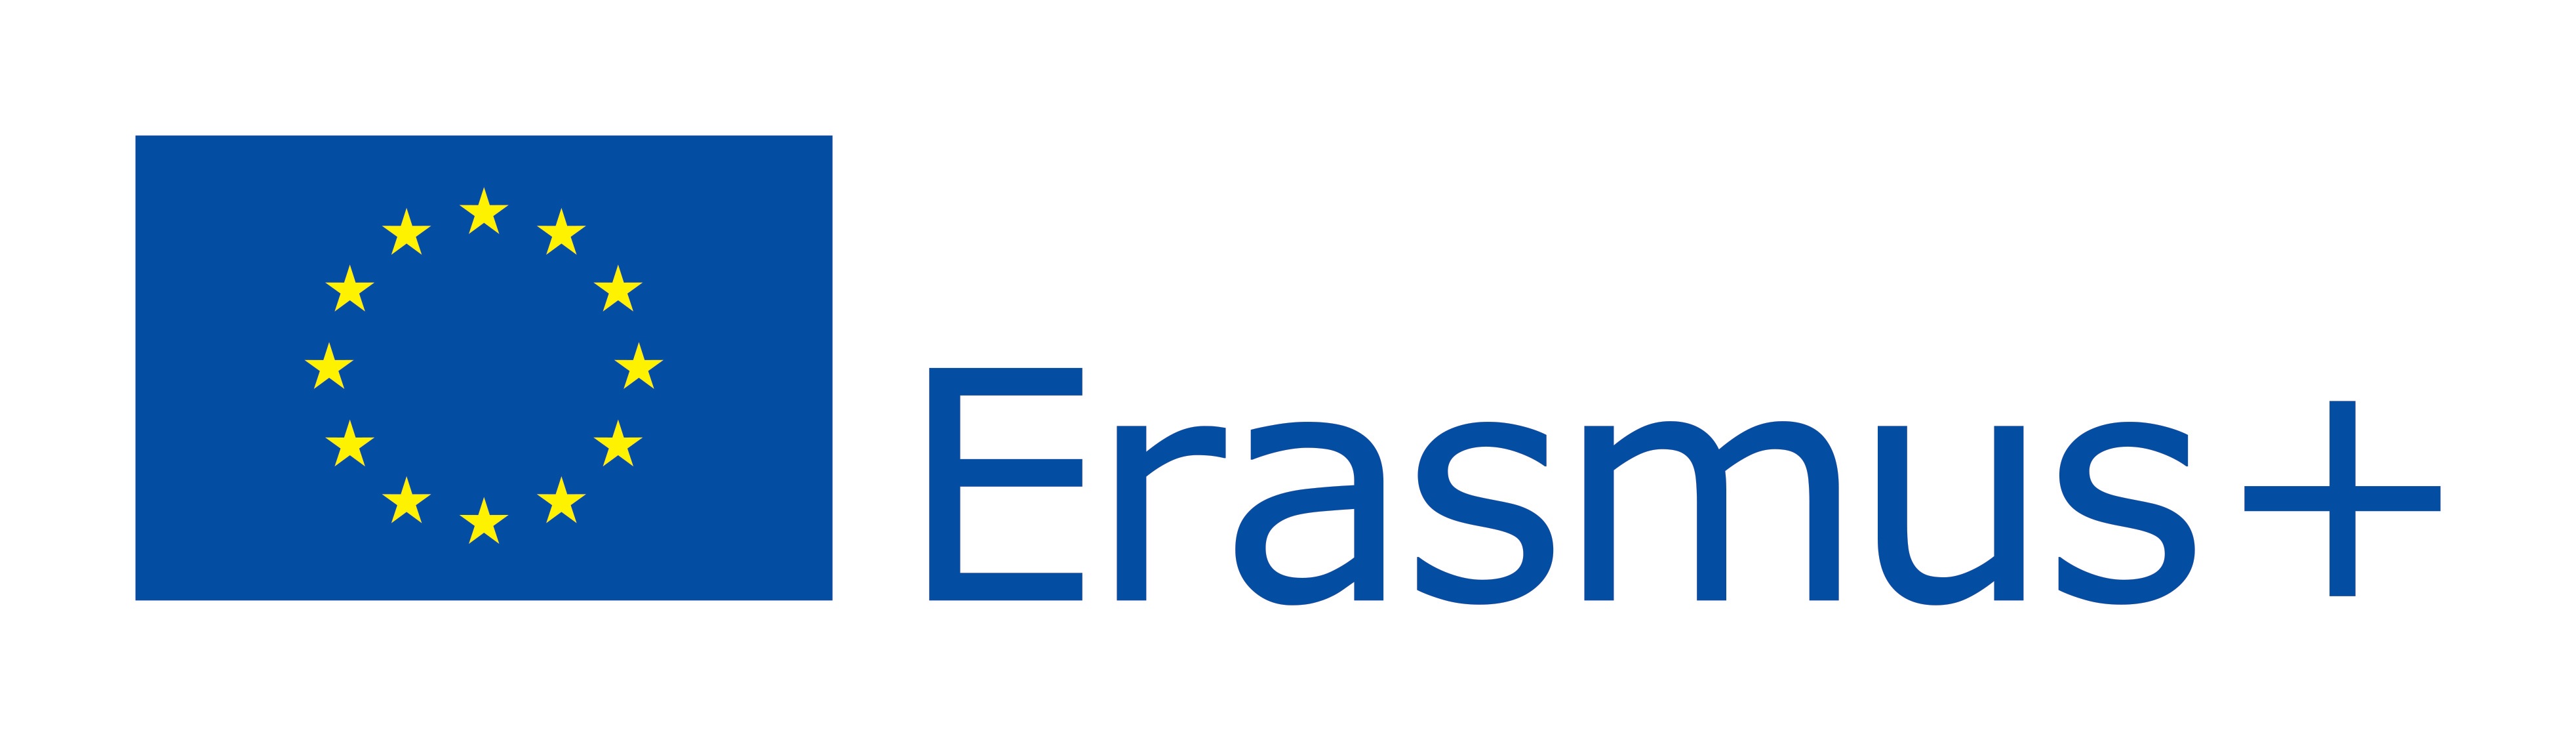 Proyectos Erasmus (erasmus.jpg)